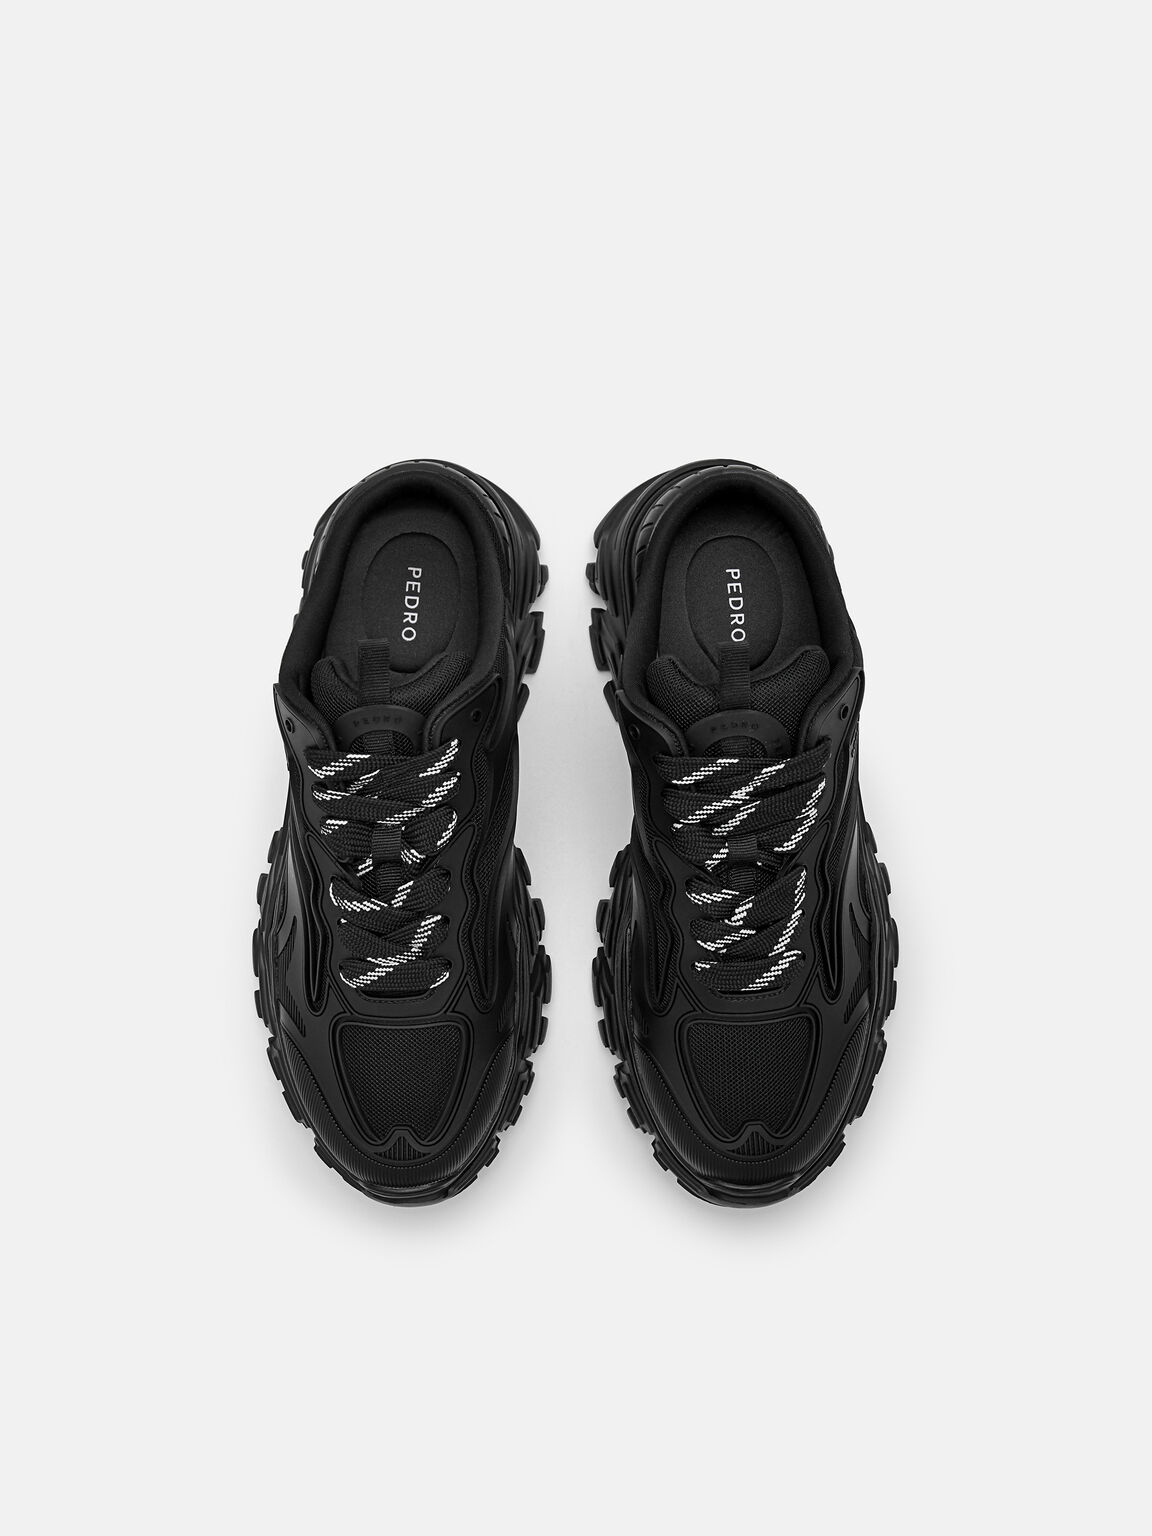 Summit Slip-On Sneakers, Black